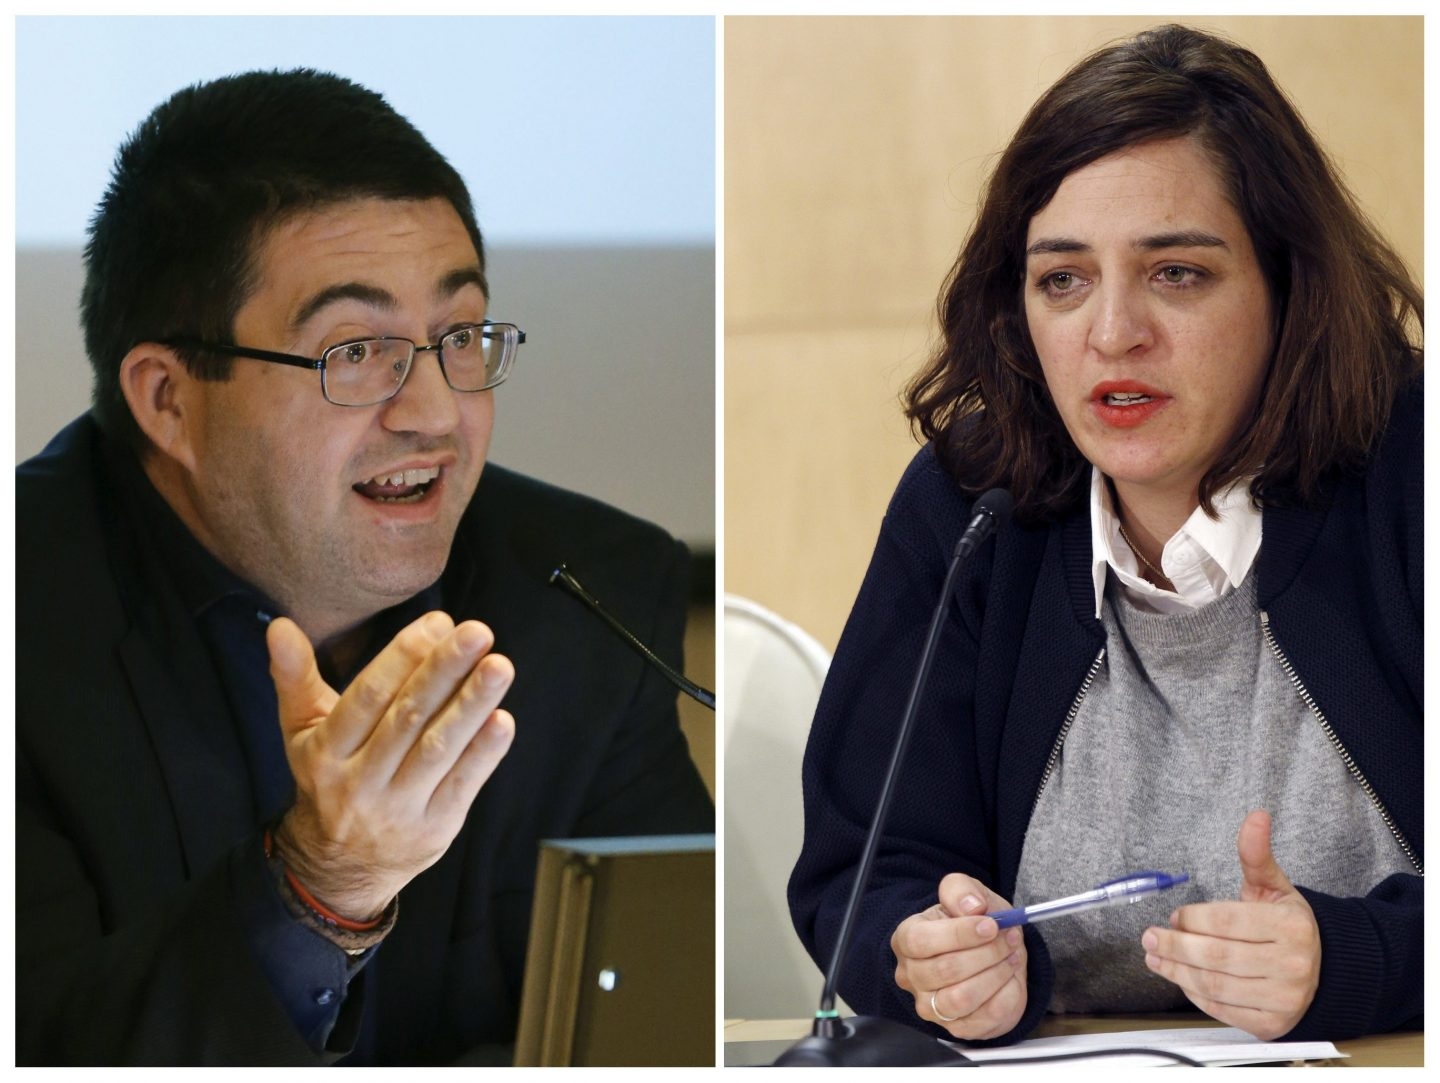 Los concejales de Ahora Madrid Carlos Sanchez Mato y Celia Mayer